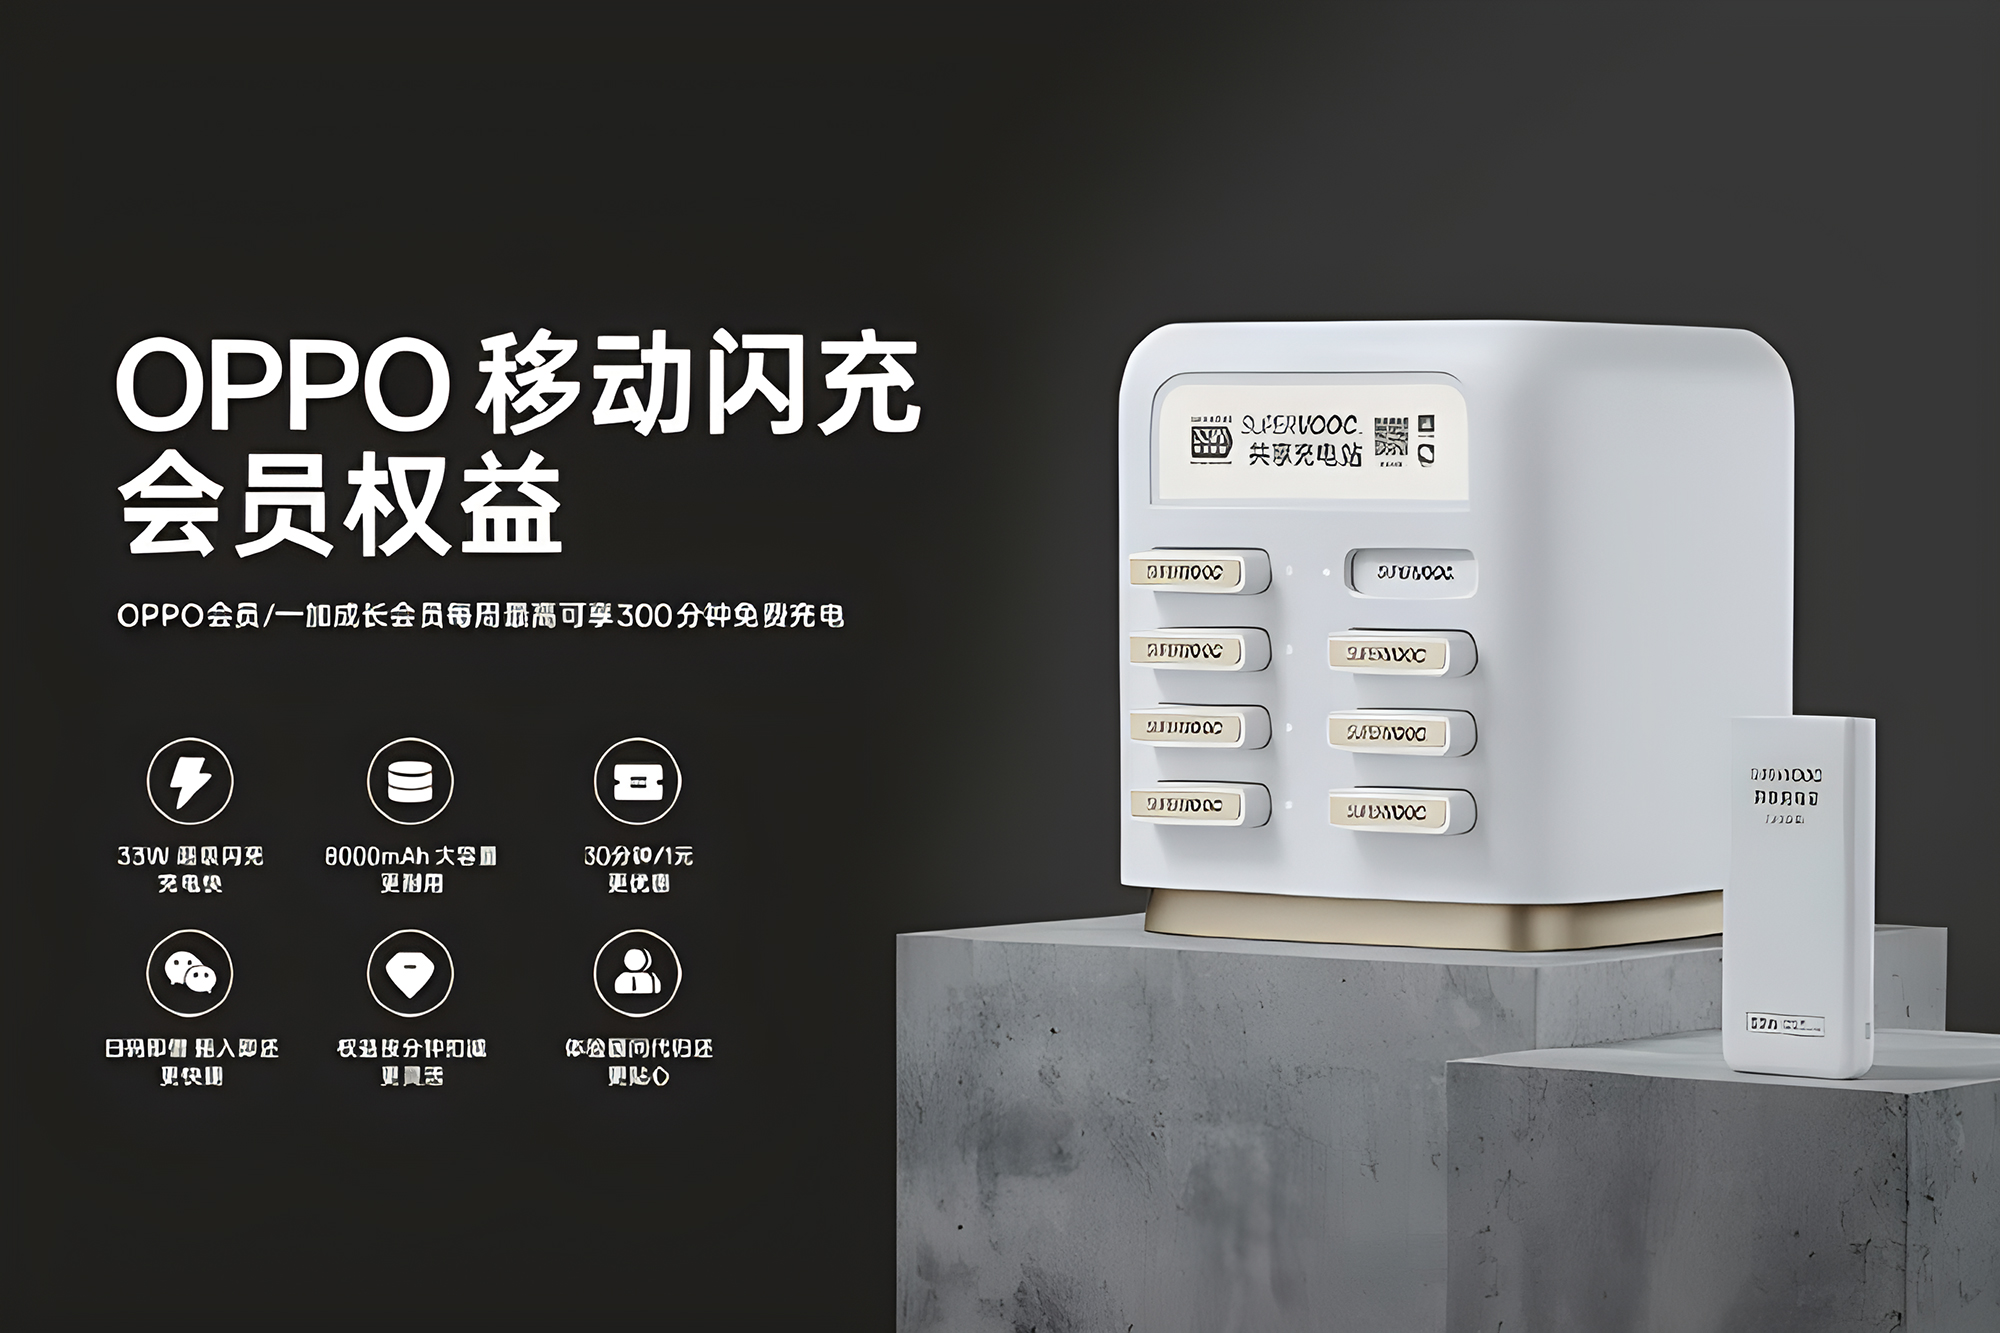 OPPO为中国用户推出免费共享充电宝服务